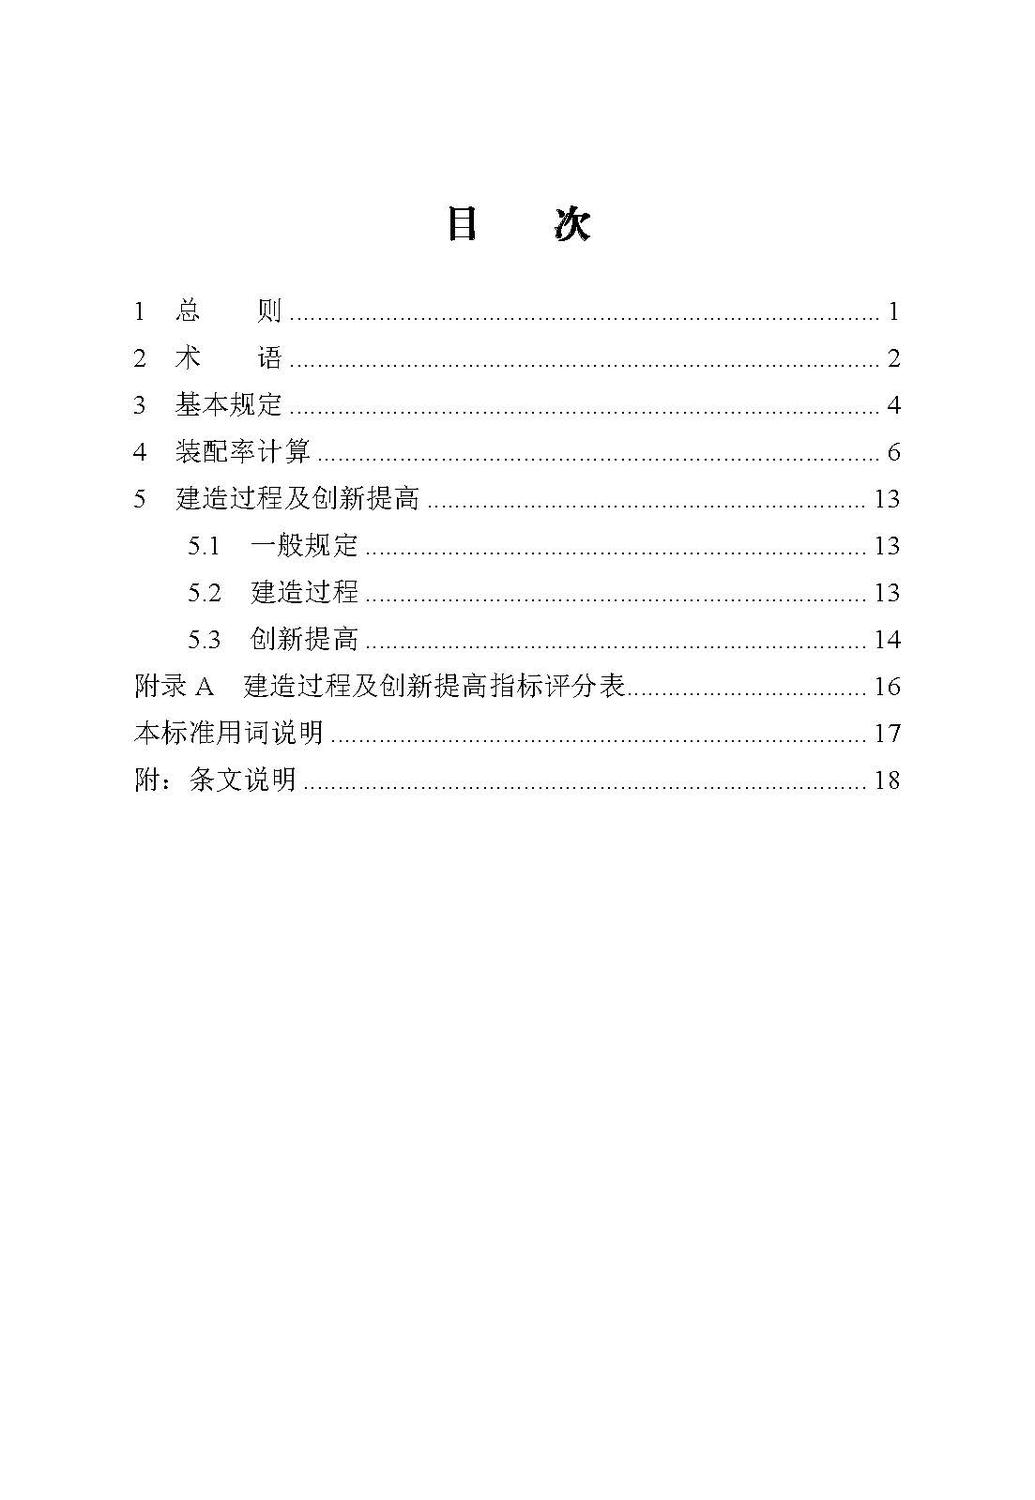 装配式建筑评价方法（河北省）_页面_07.jpg